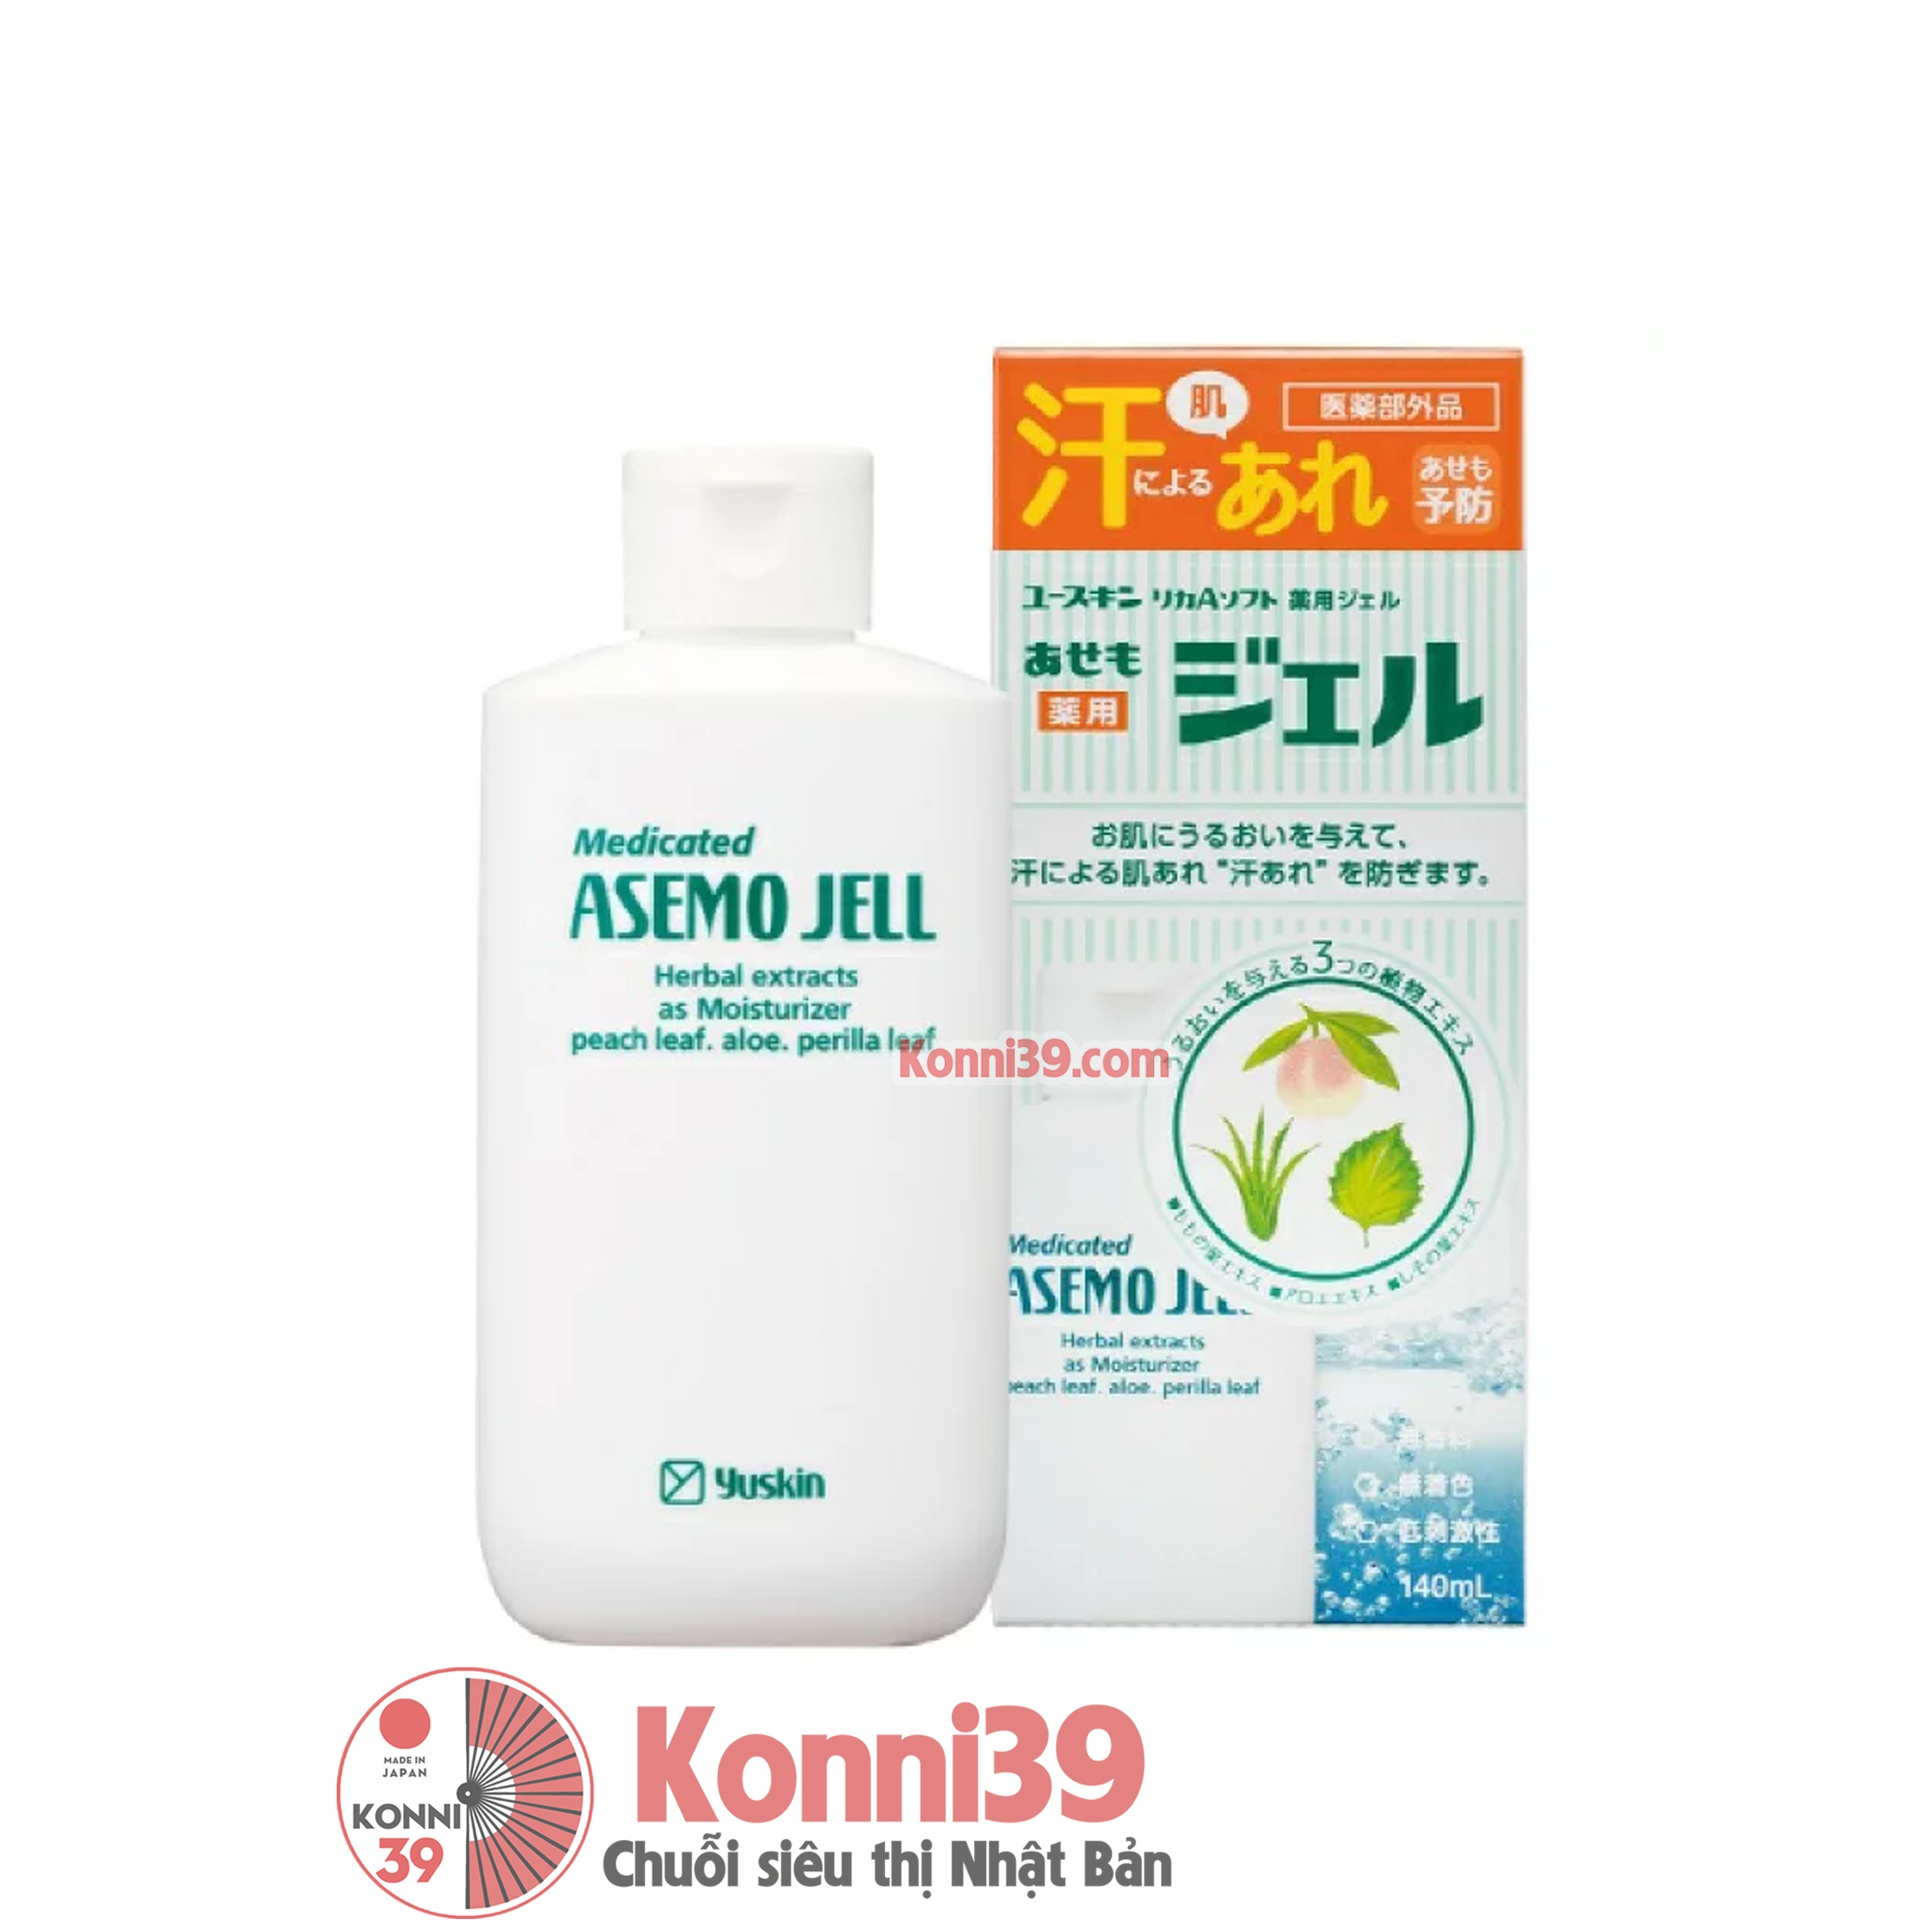 Kem trị rôm sẩy Yuskin Medicated ASemo Jell dang gel 140ml - Chuỗi siêu thị  Nhật Bản nội địa - Made in Japan Konni39 tại Việt Nam